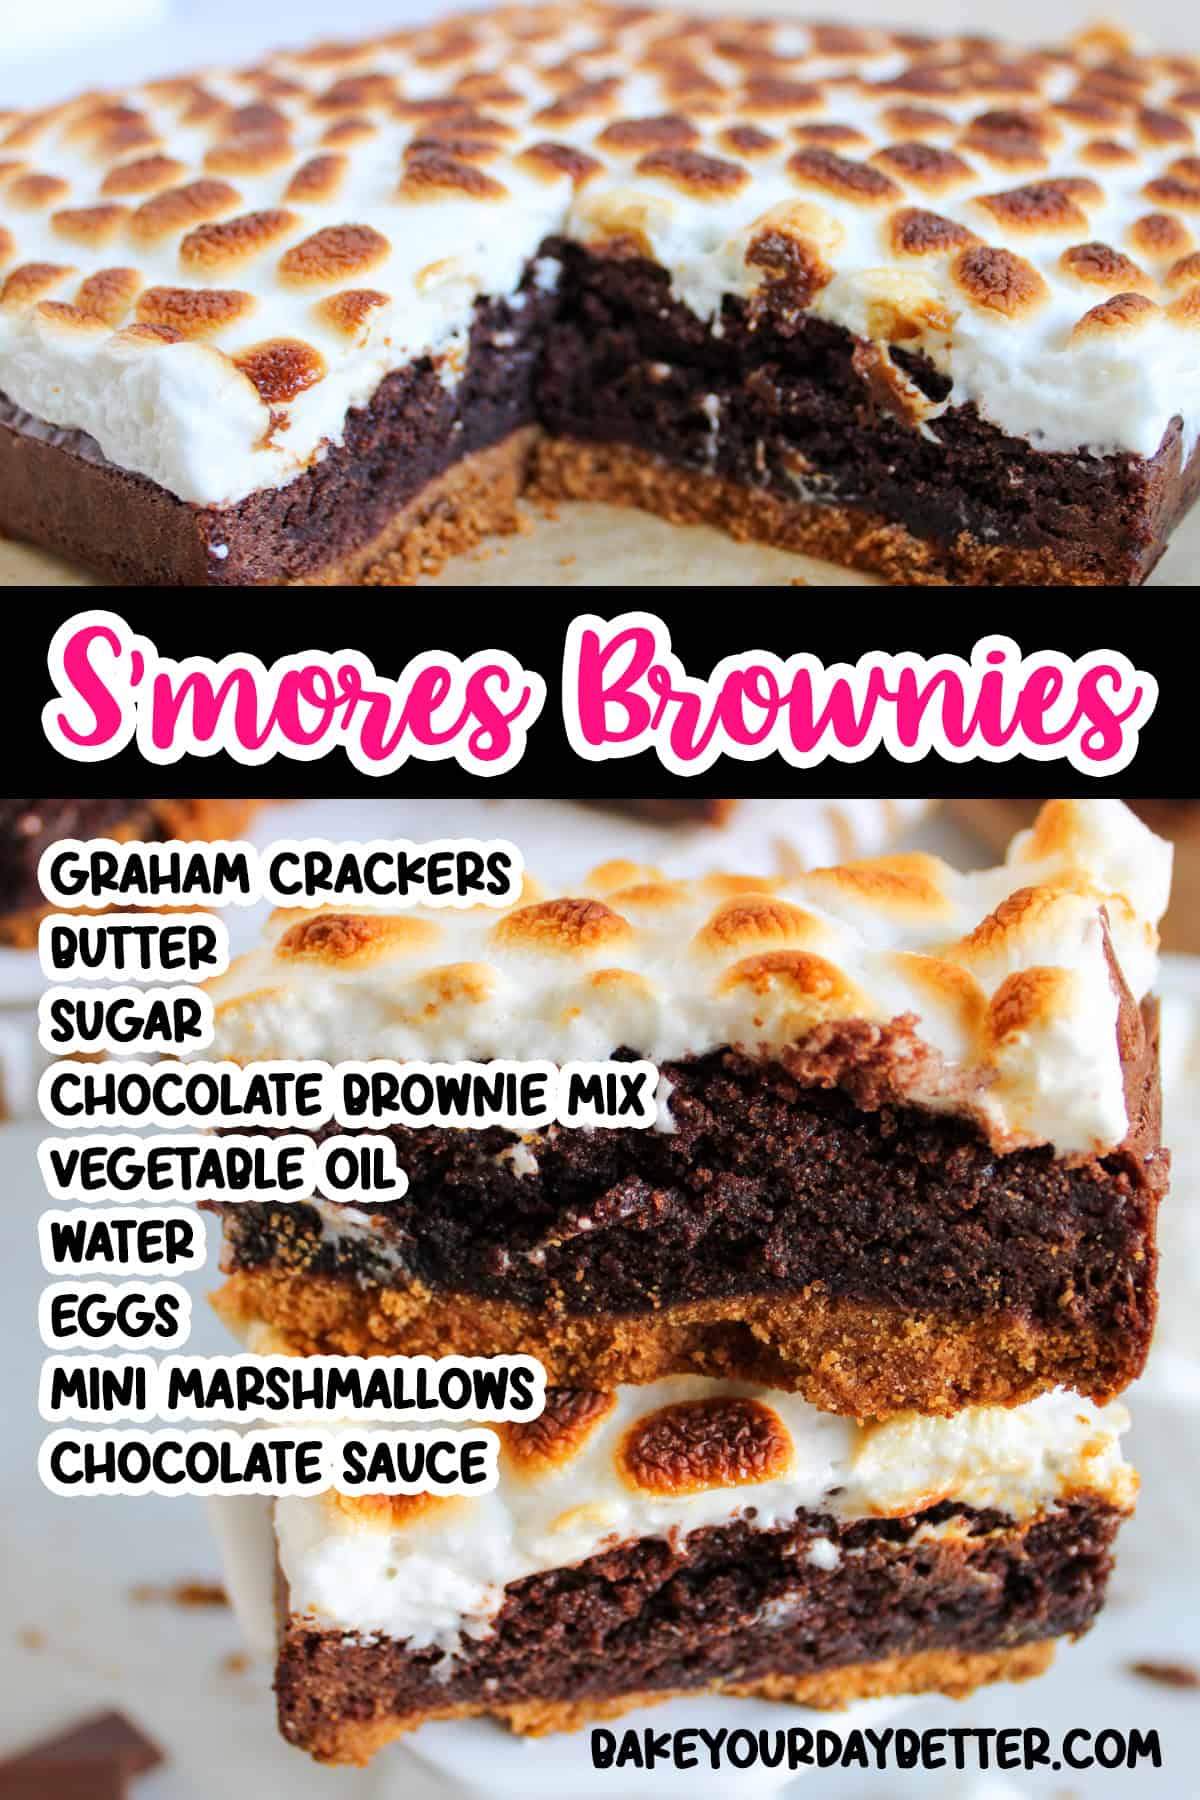 smores brownies ingredients list 1